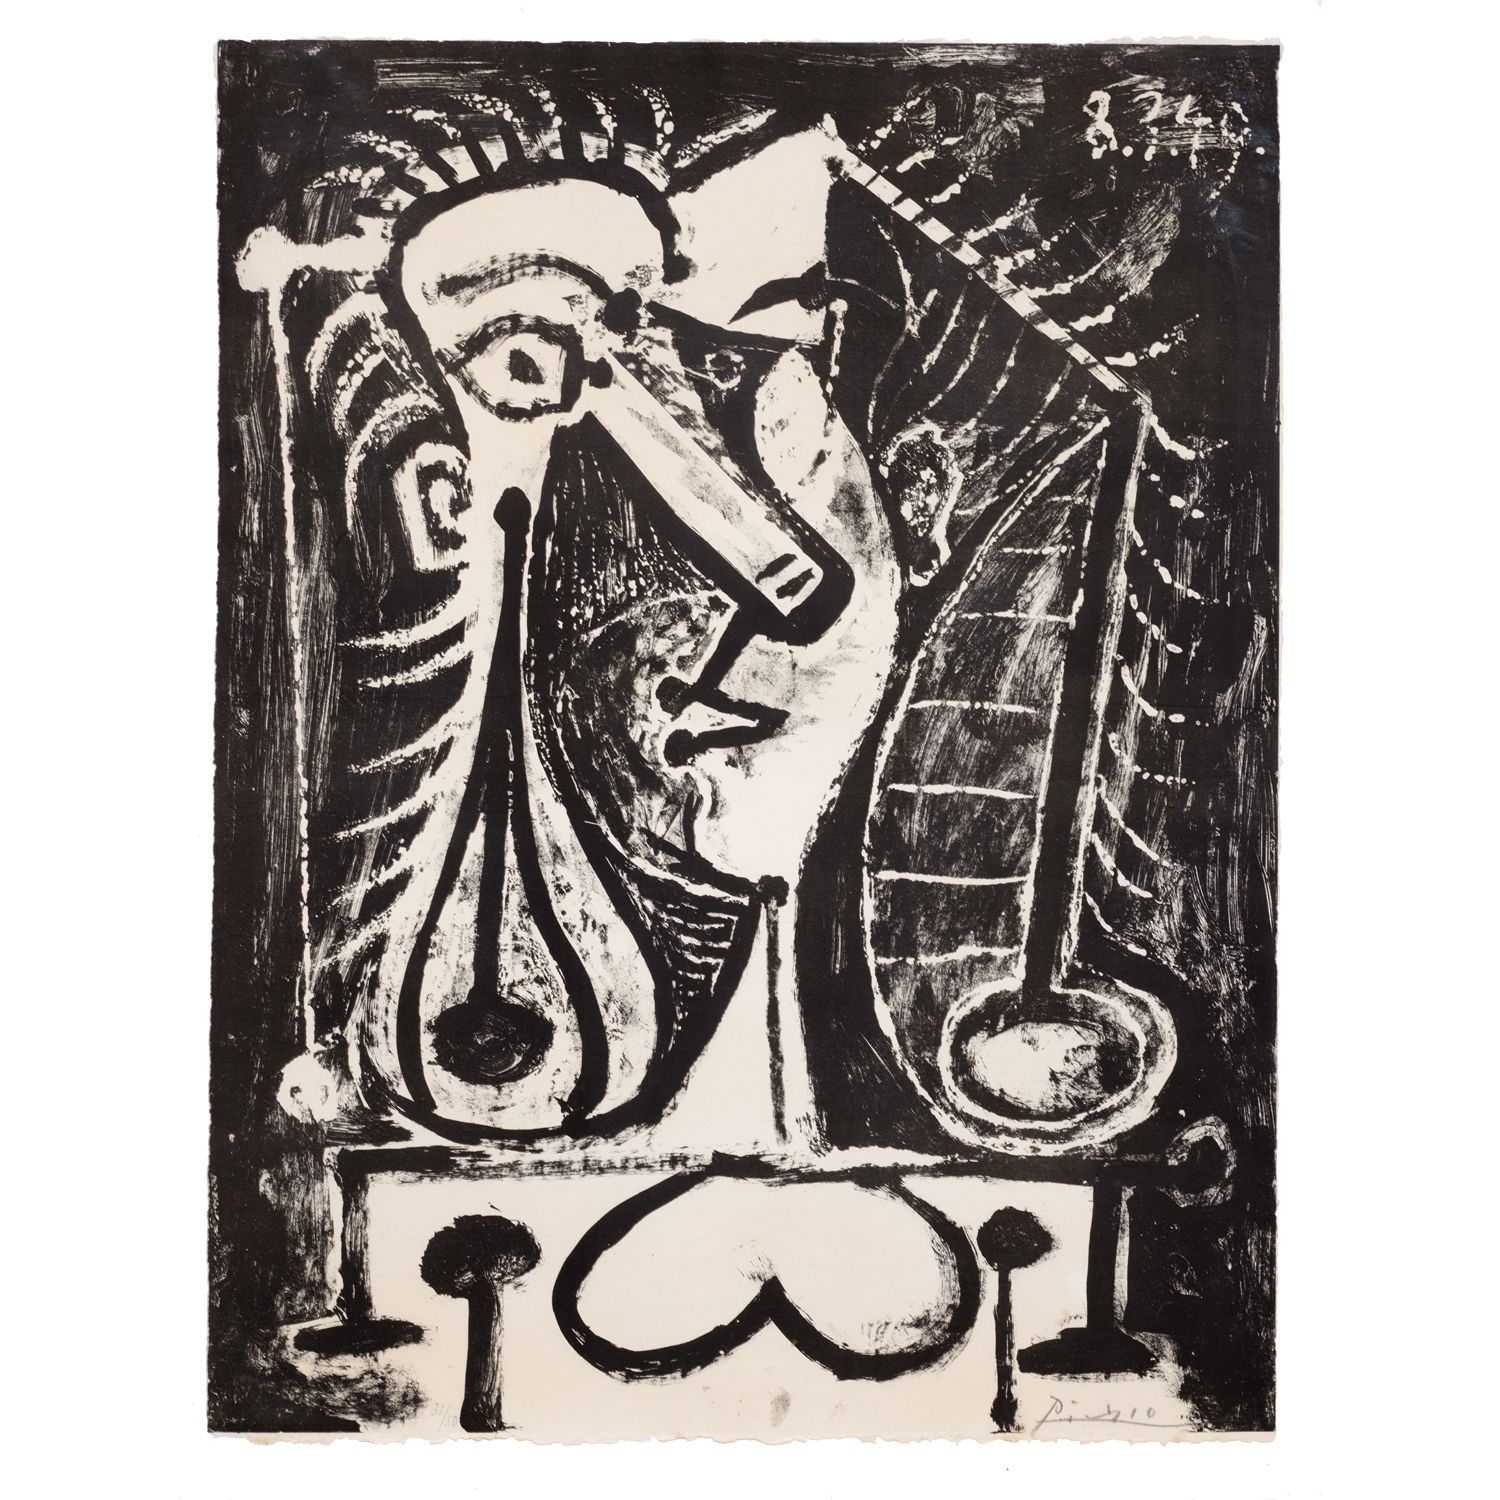 Pablo Picasso (1881-1973) Figure composée I - 1949 Pablo Picasso (1881-1973)
Zus&hellip;